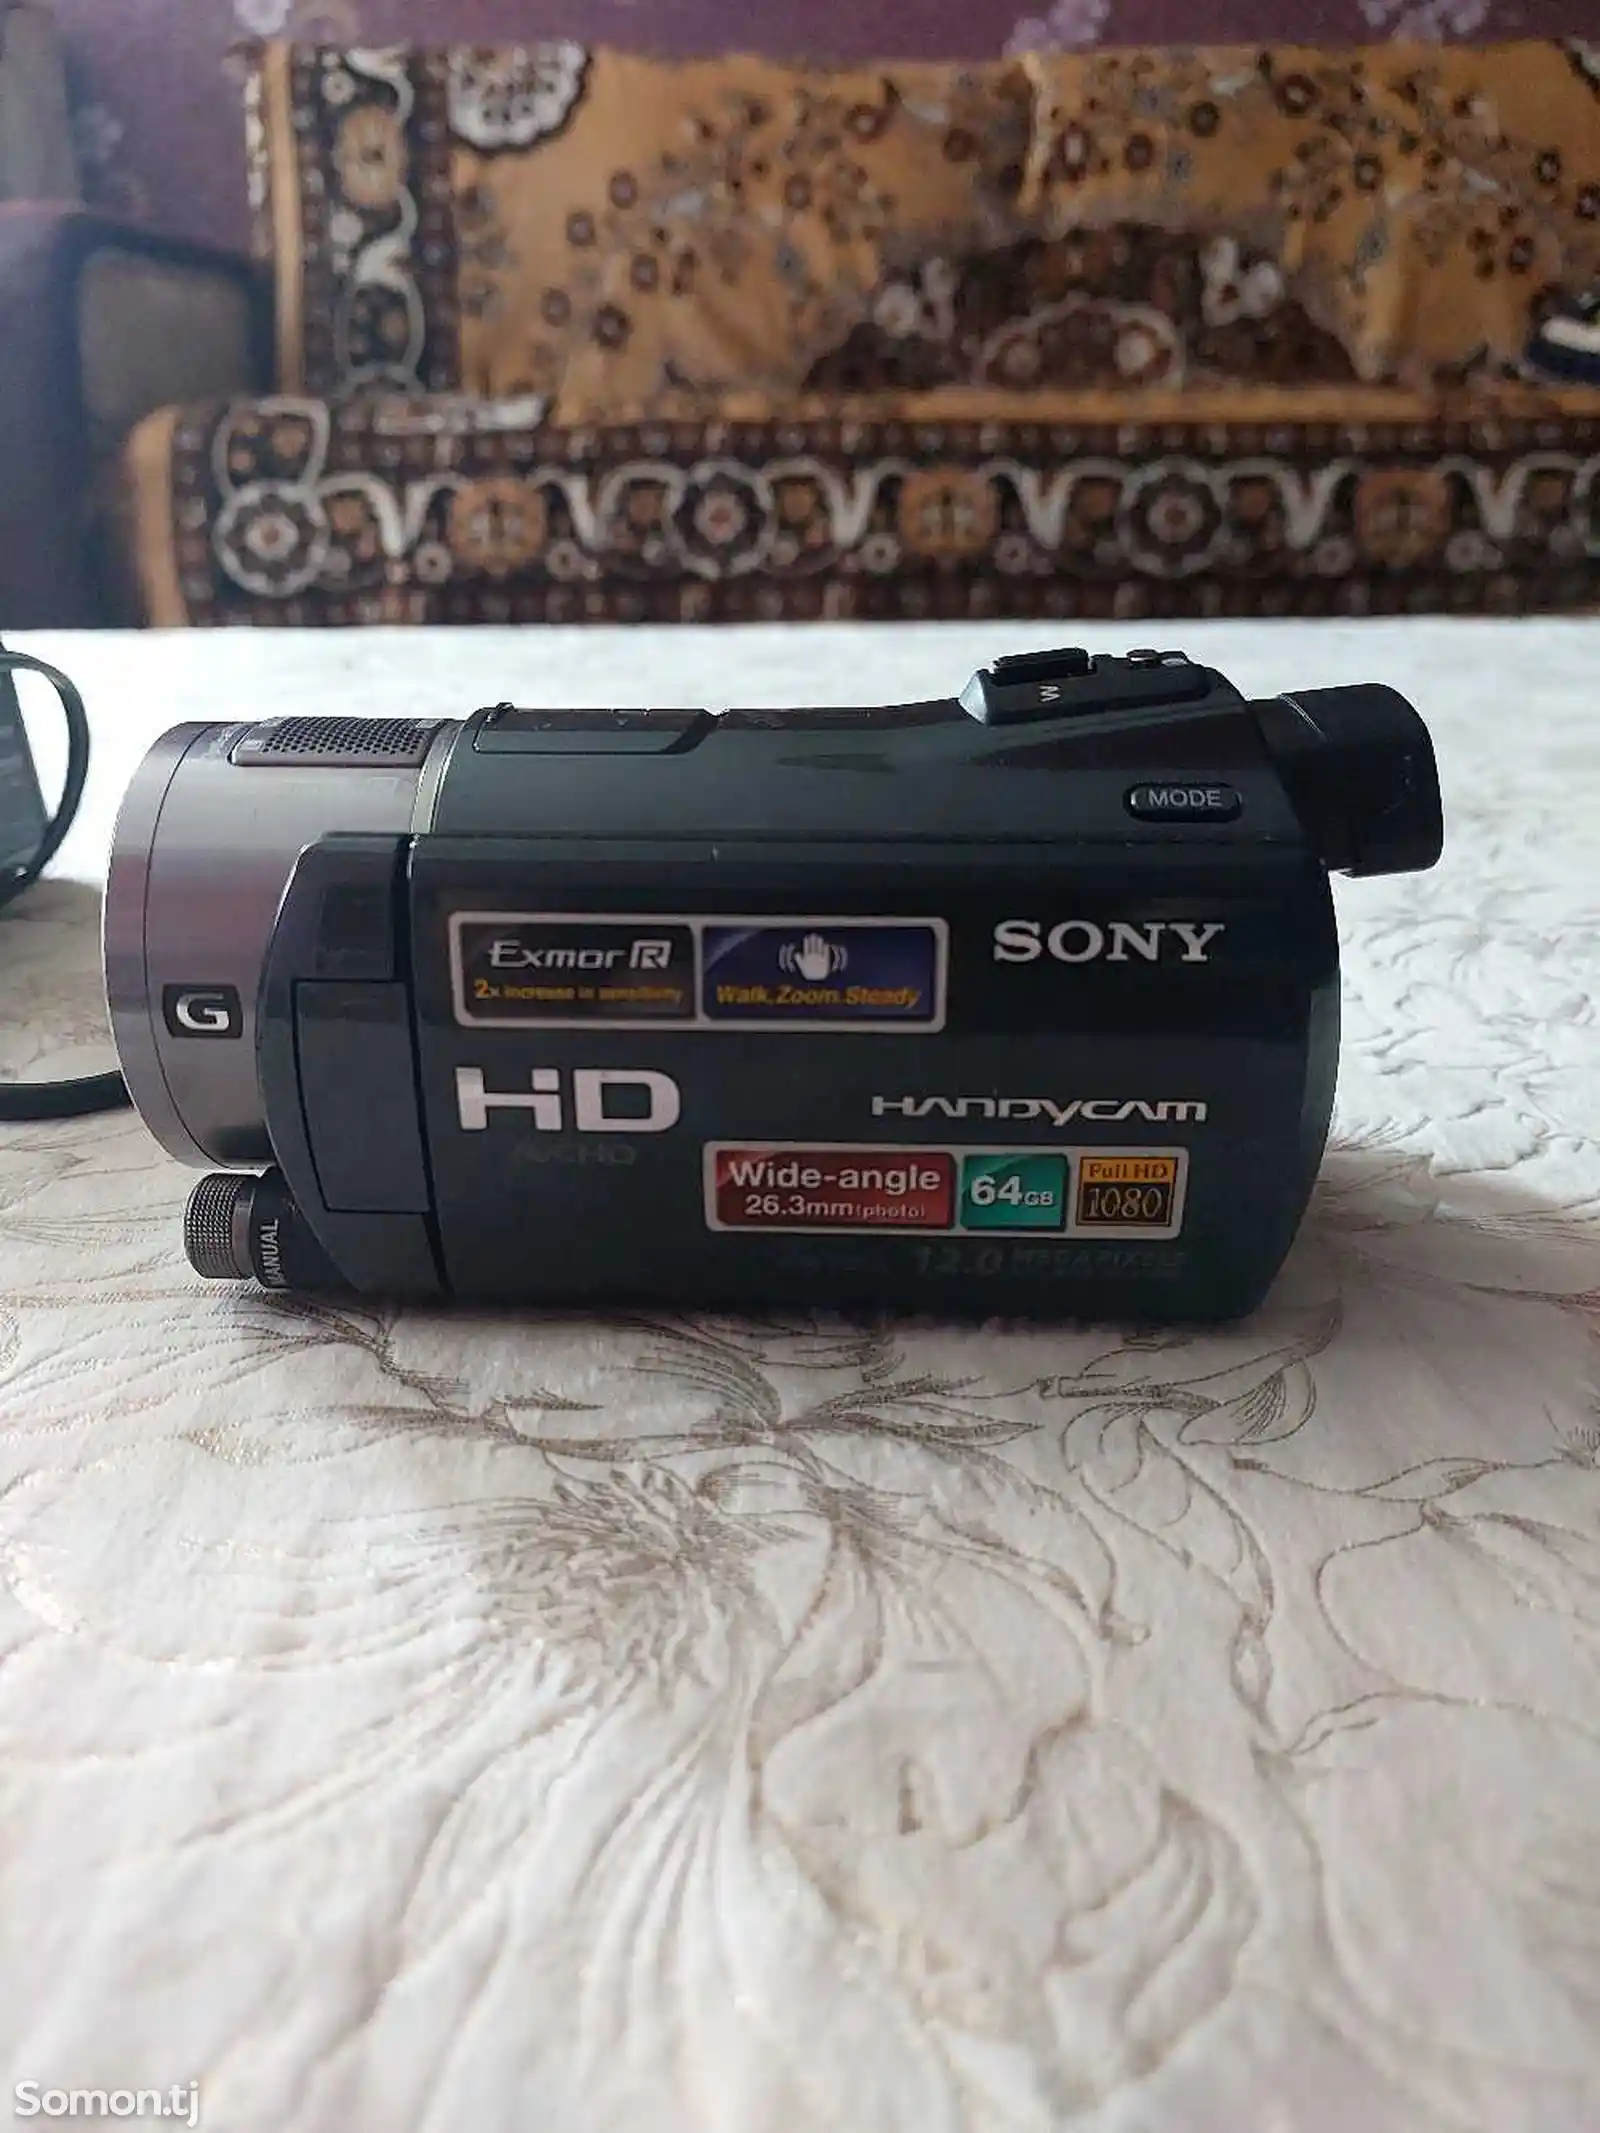 Мини видеокамера Sony HDR-7